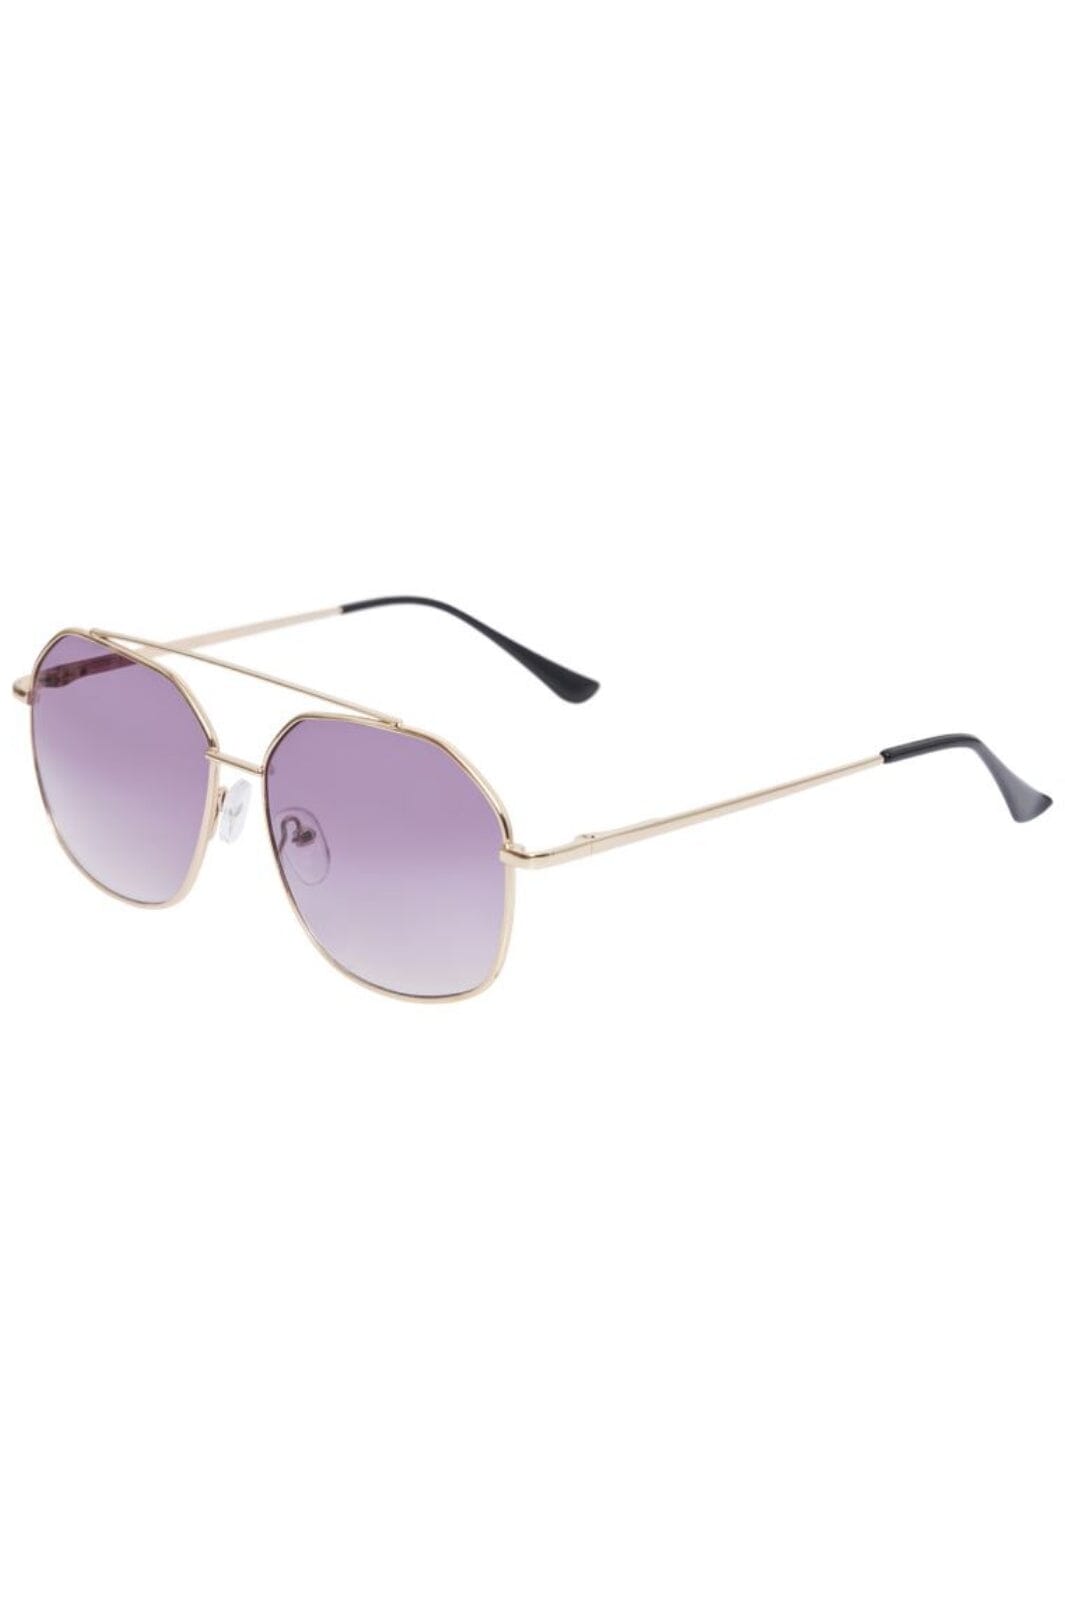 Pieces - Pcandie M Sunglasses - 4399346 Gold Colour Purple Lens Solbriller 